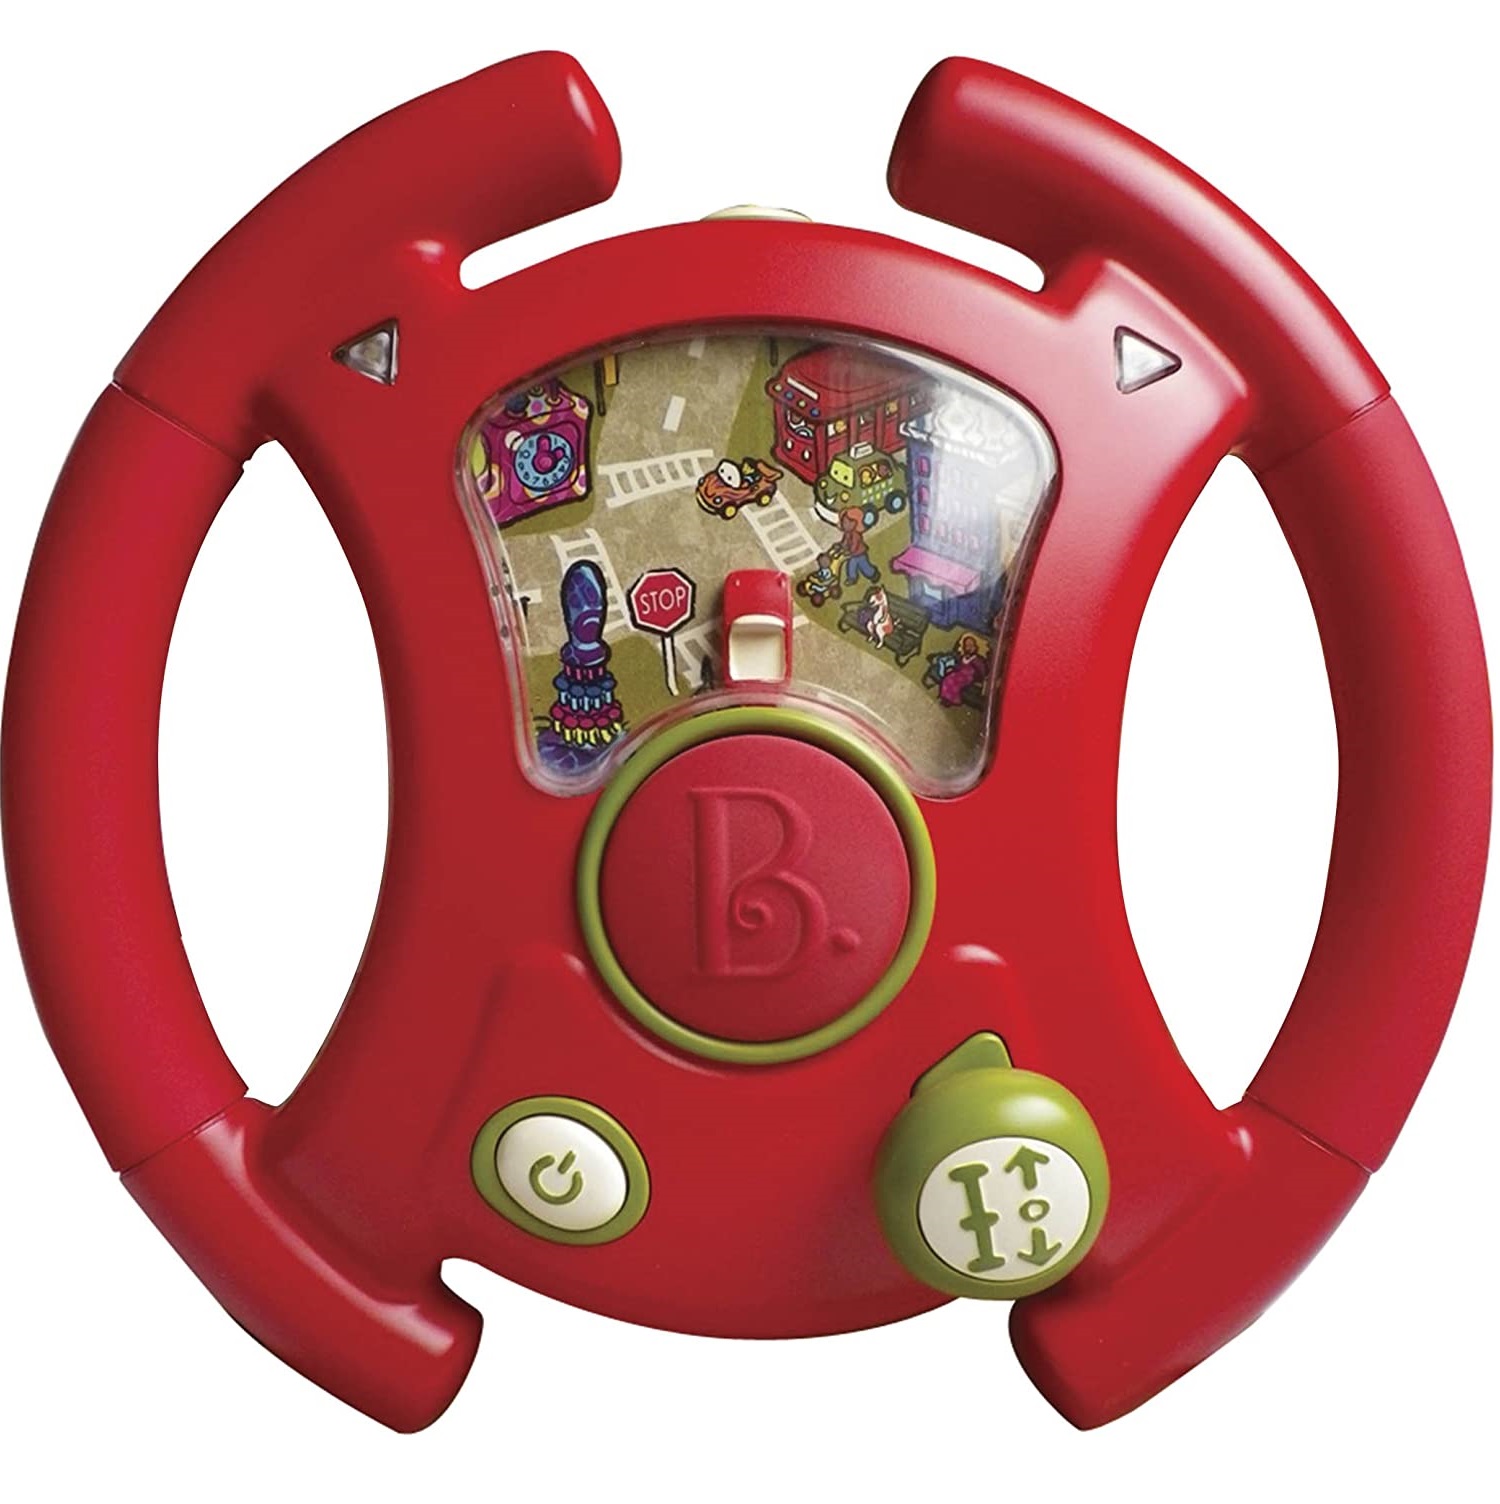 B. toys ドライブハンドル はじめてのドライブ 車のハンドルのおもちゃ